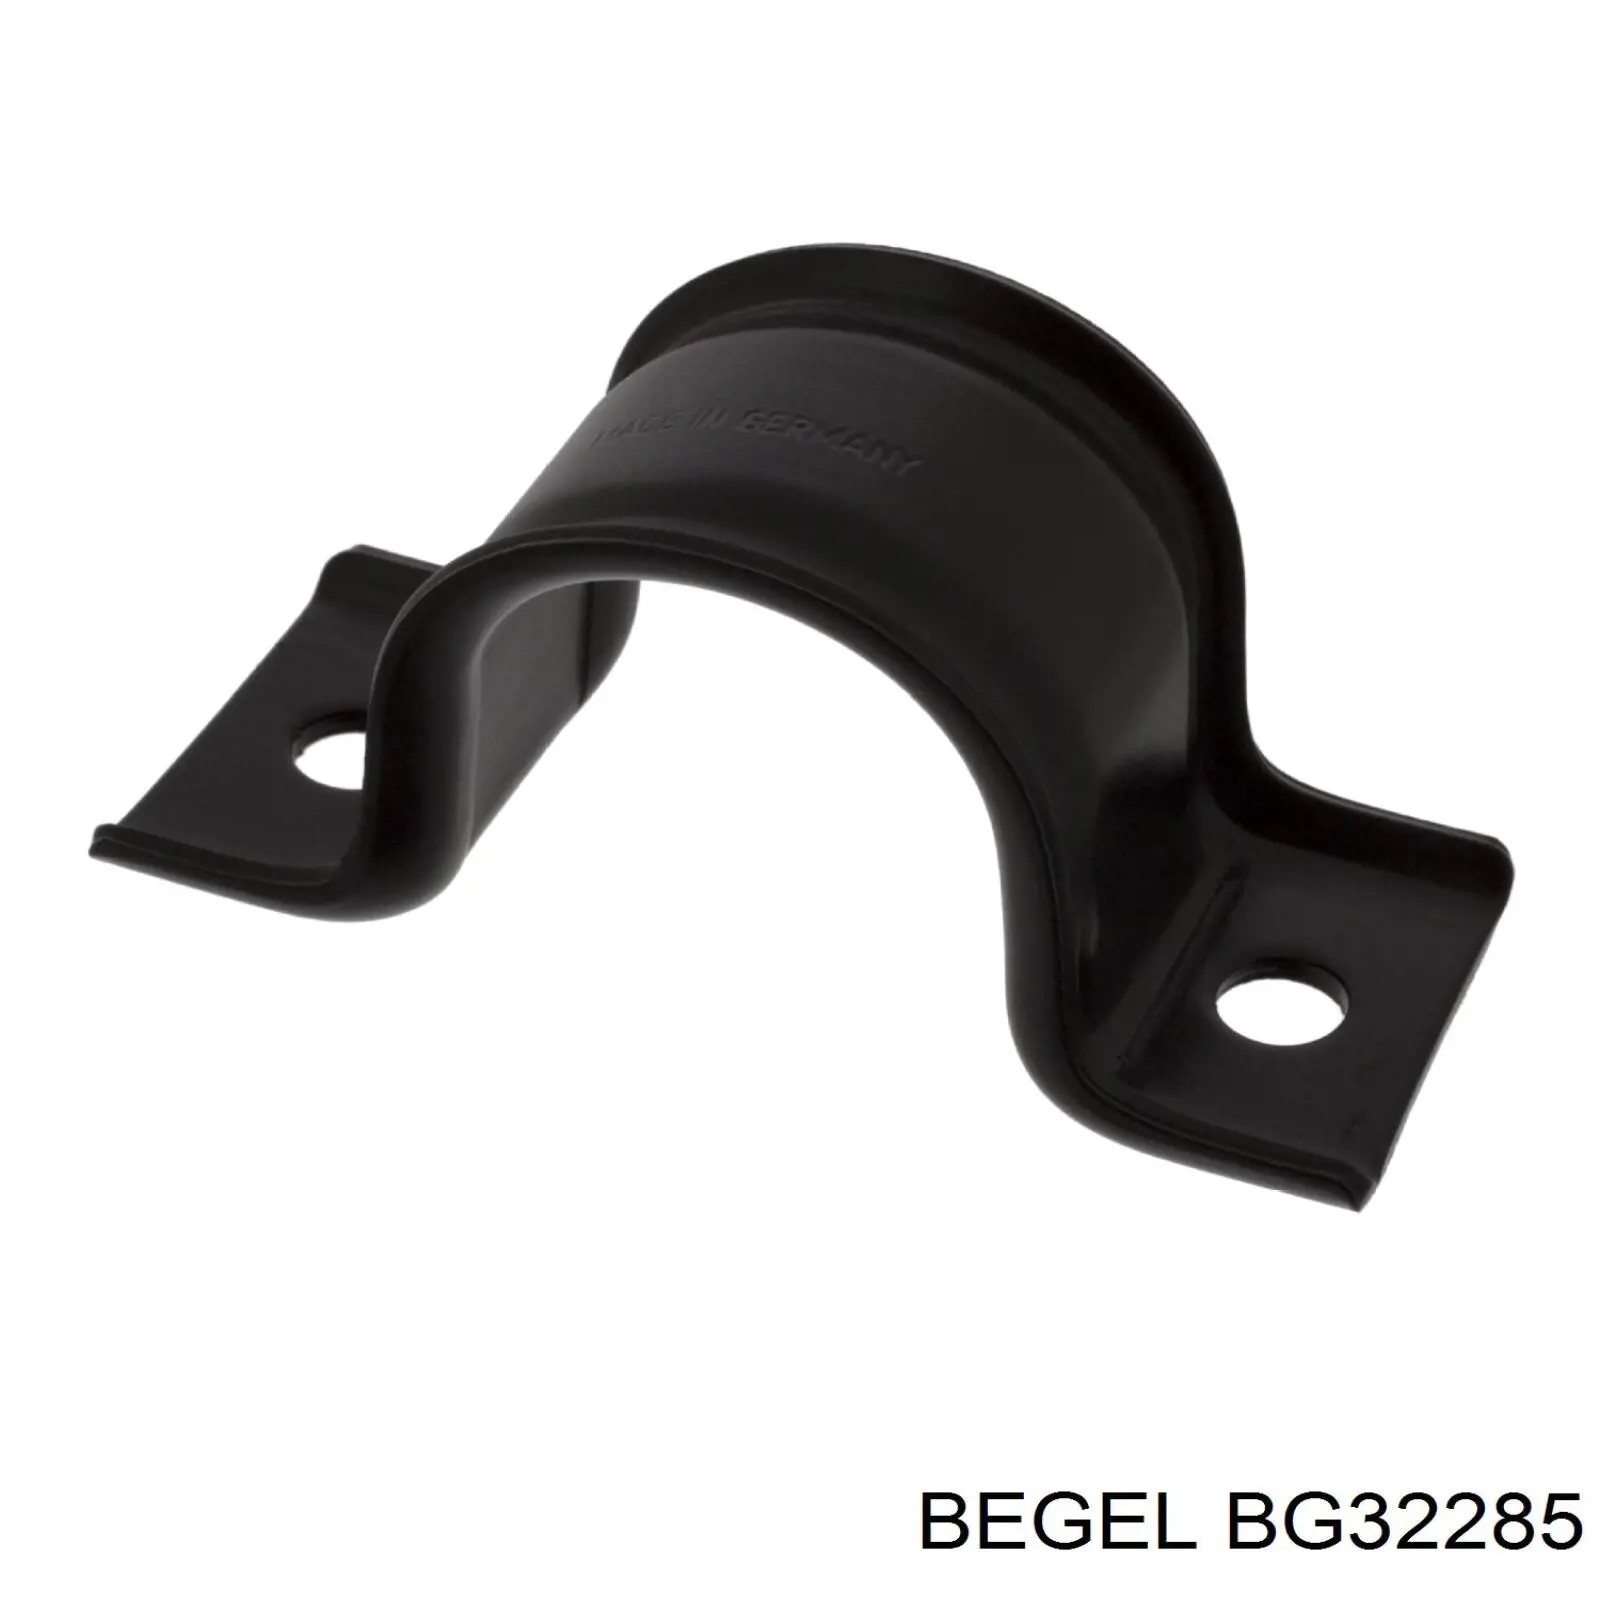 BG 32285 Begel втулка стабилизатора переднего